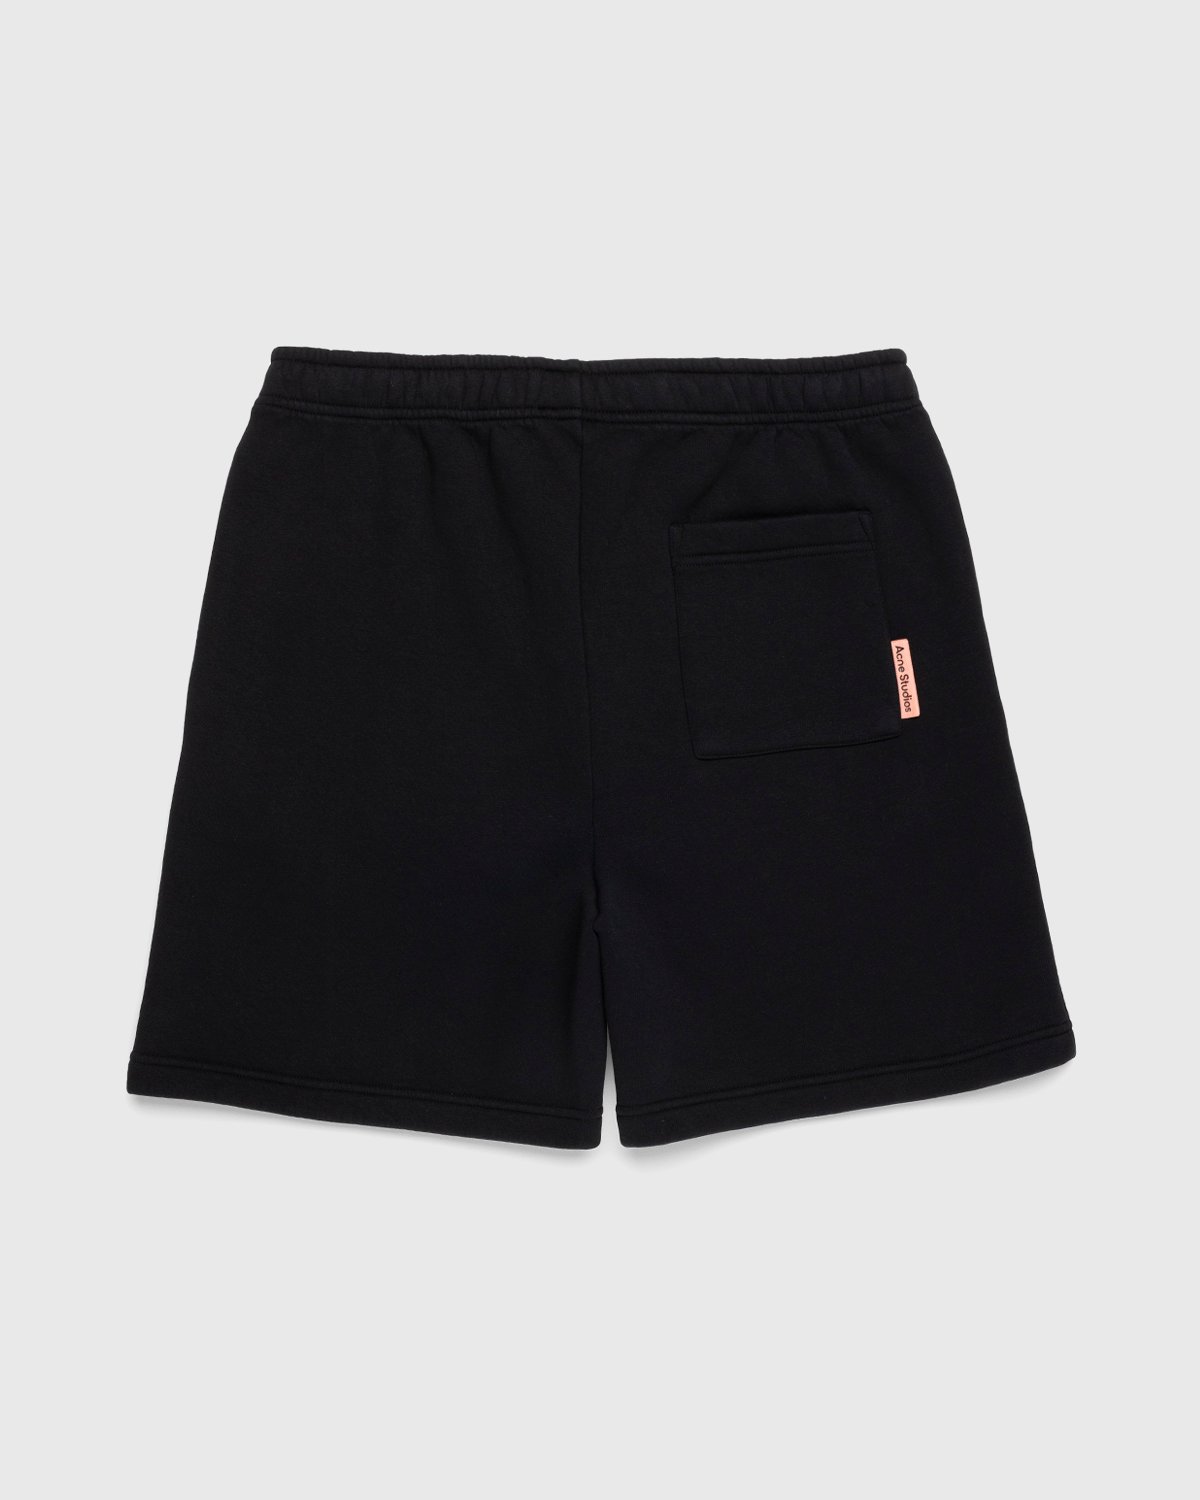 Acne Studios - Cotton Sweat Shorts Black - Clothing - Black - Image 2